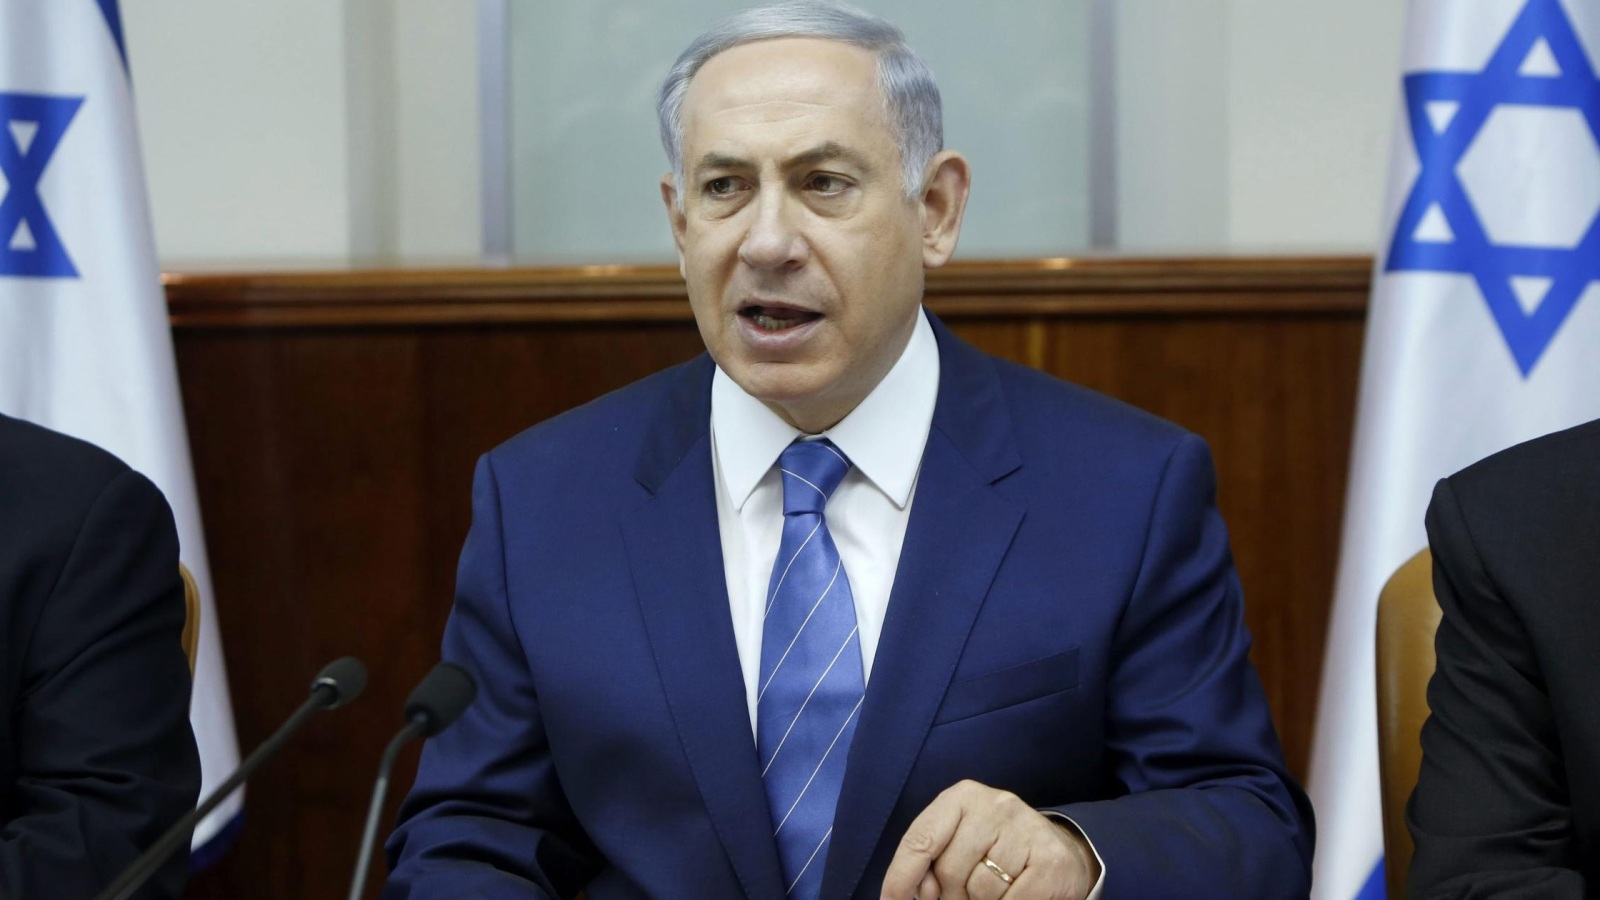 نتنياهو أمر باتخاذ إجراءات مشددة ضد الفلسطينيين وفرض طوق أمني حول القدس المحتلة (الأوروبية)